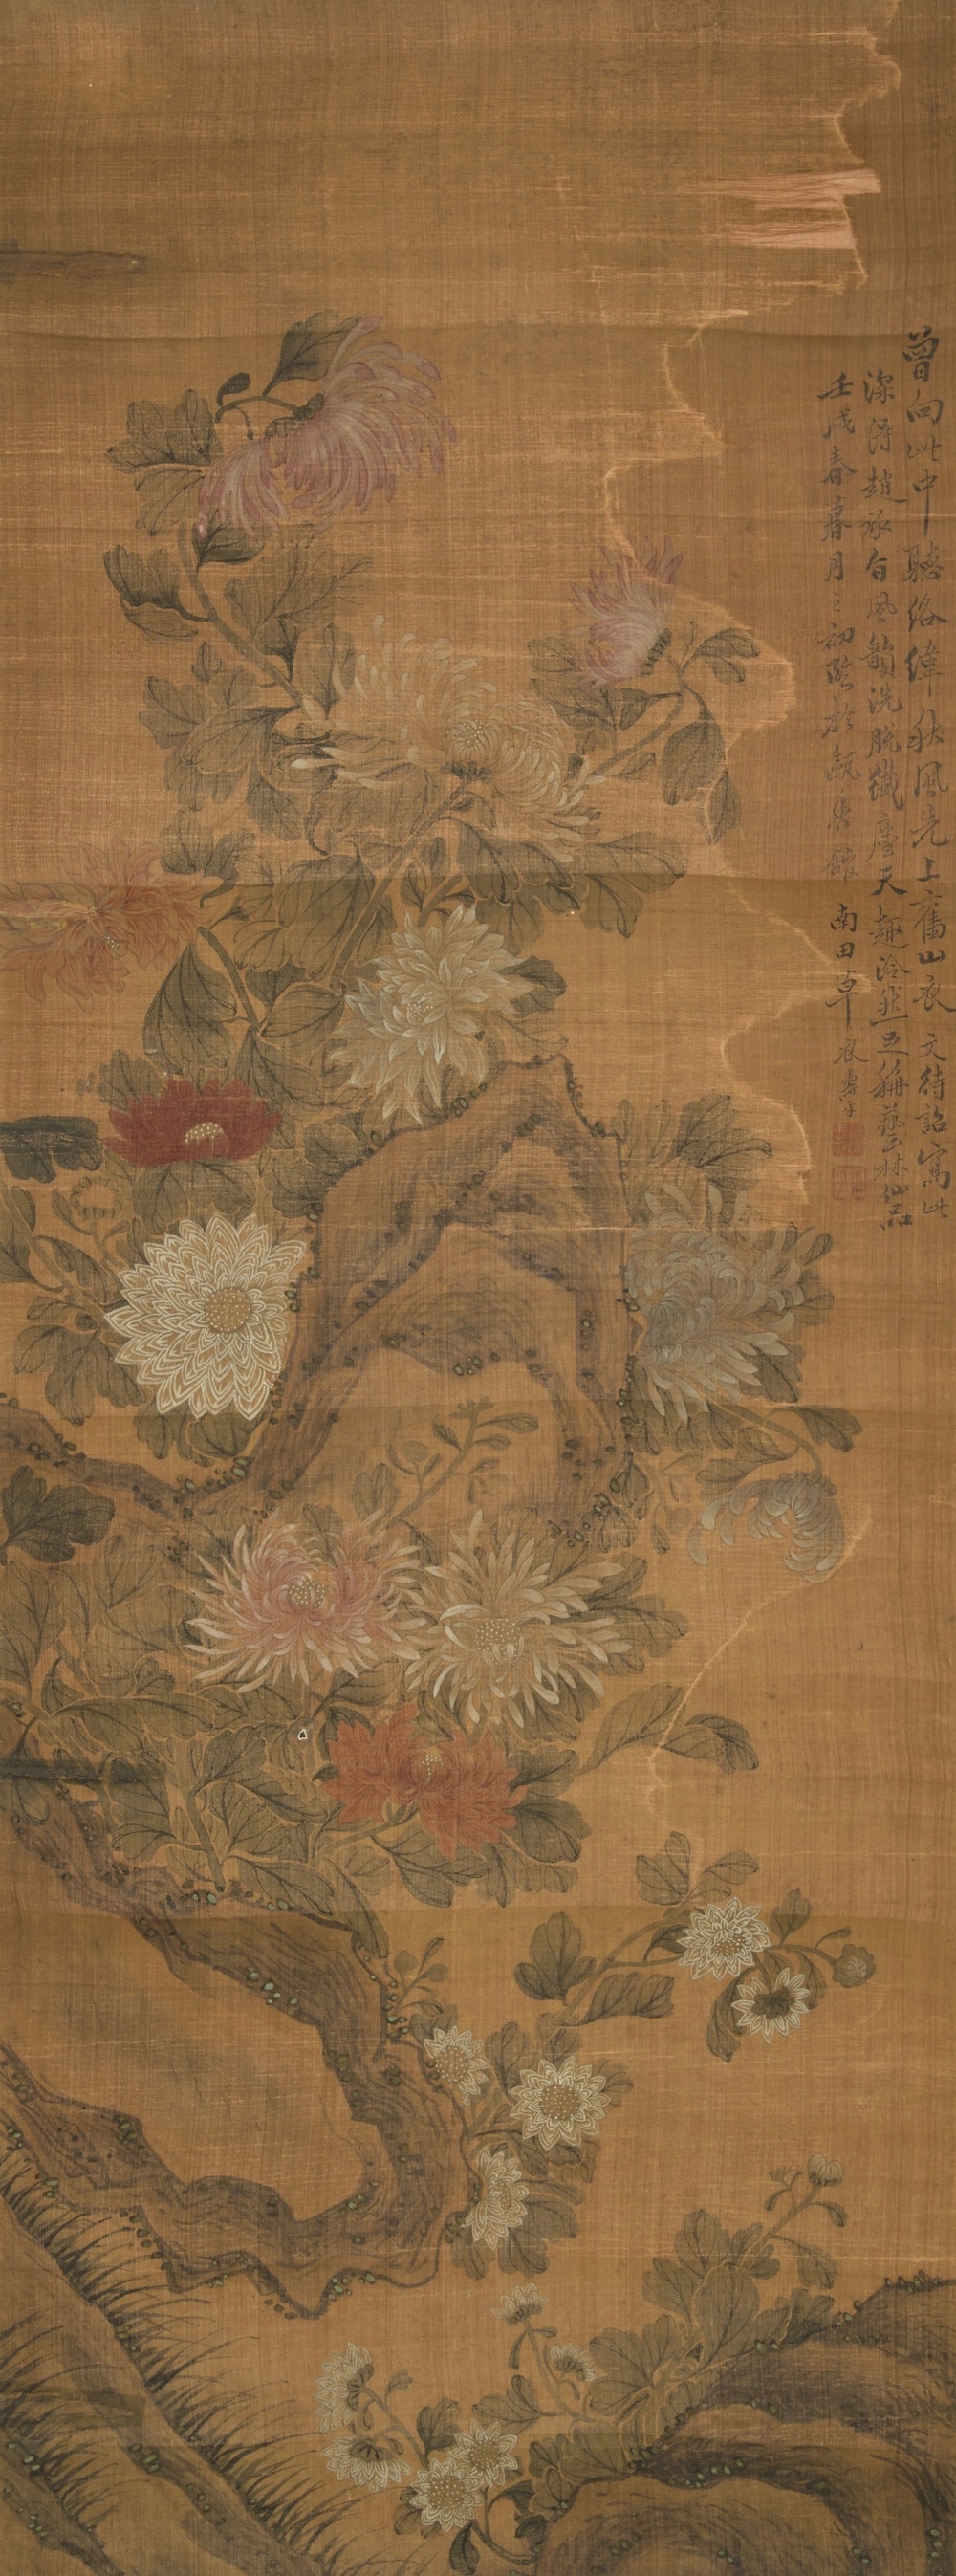 Yun Shou Ping (Chine, 1633-1690): Fleurs sur un rocher, encre et couleurs sur soie, mont&eacute;